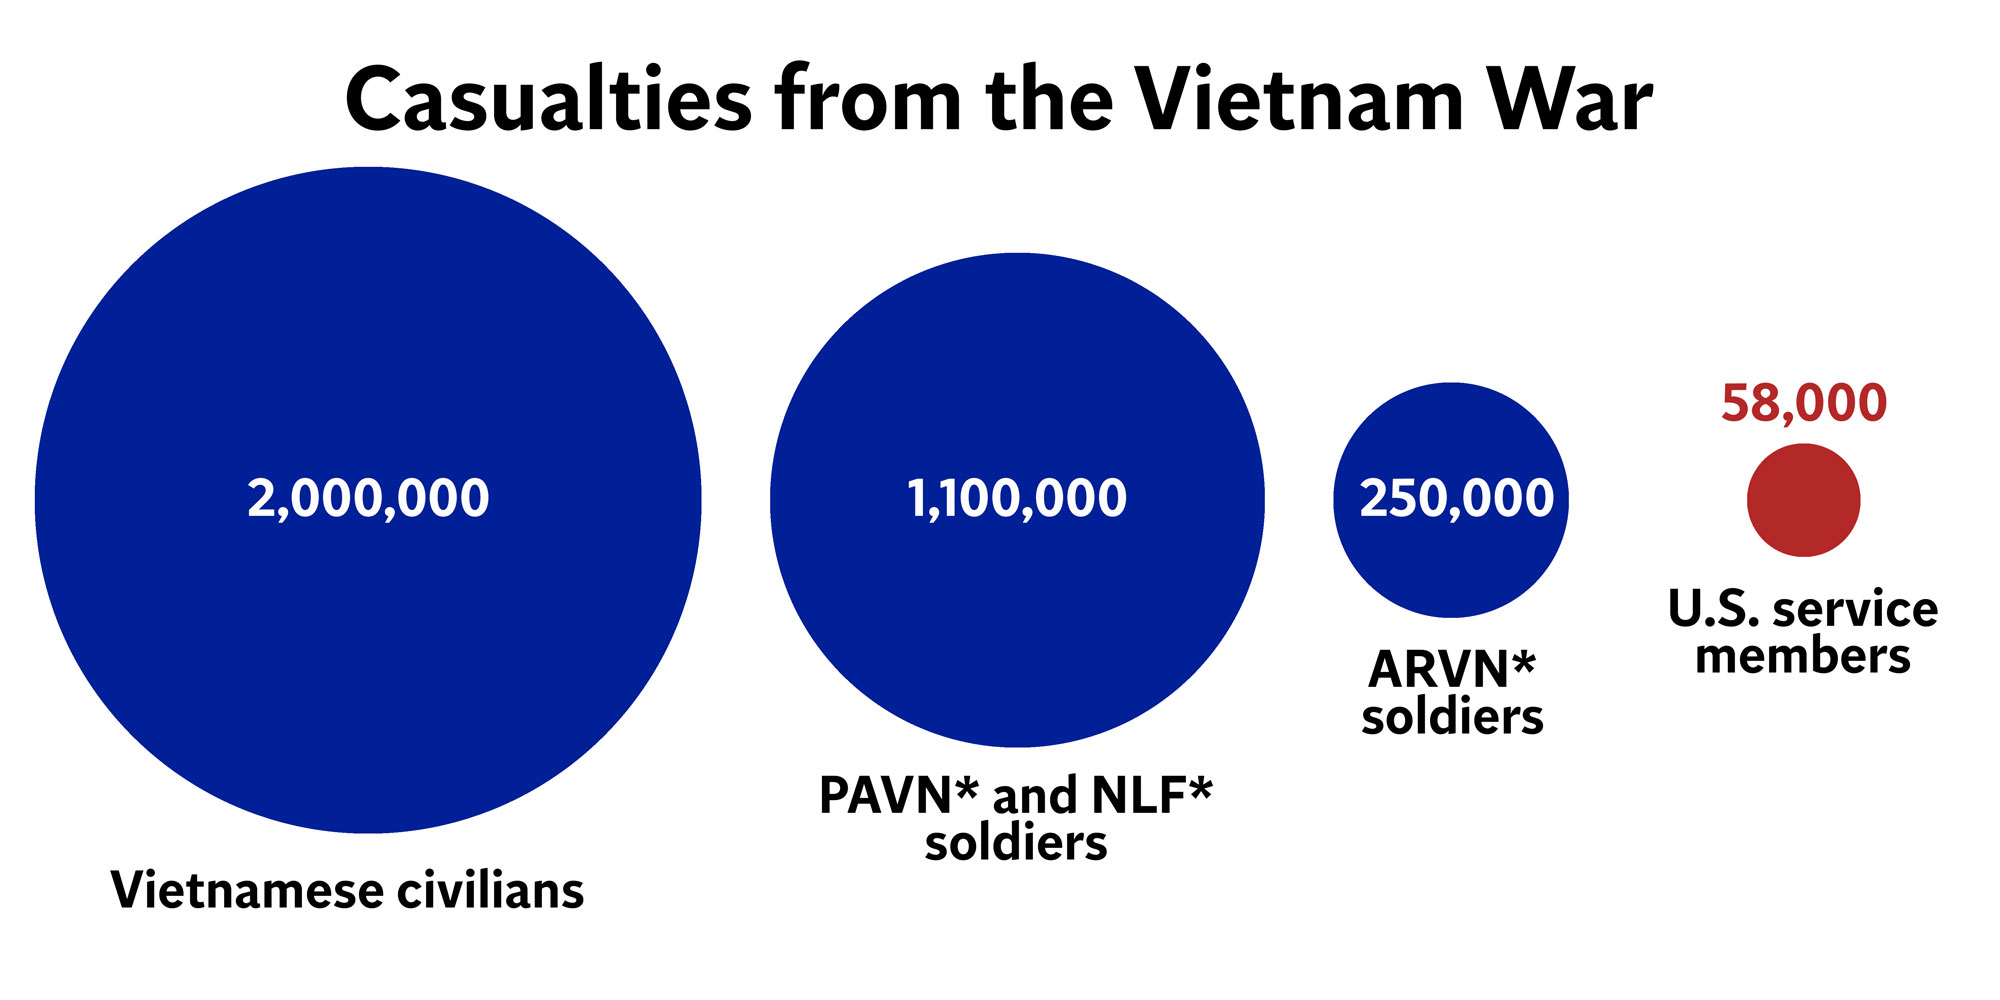 Casualties-from-Vietnam-War-infographic.jpg